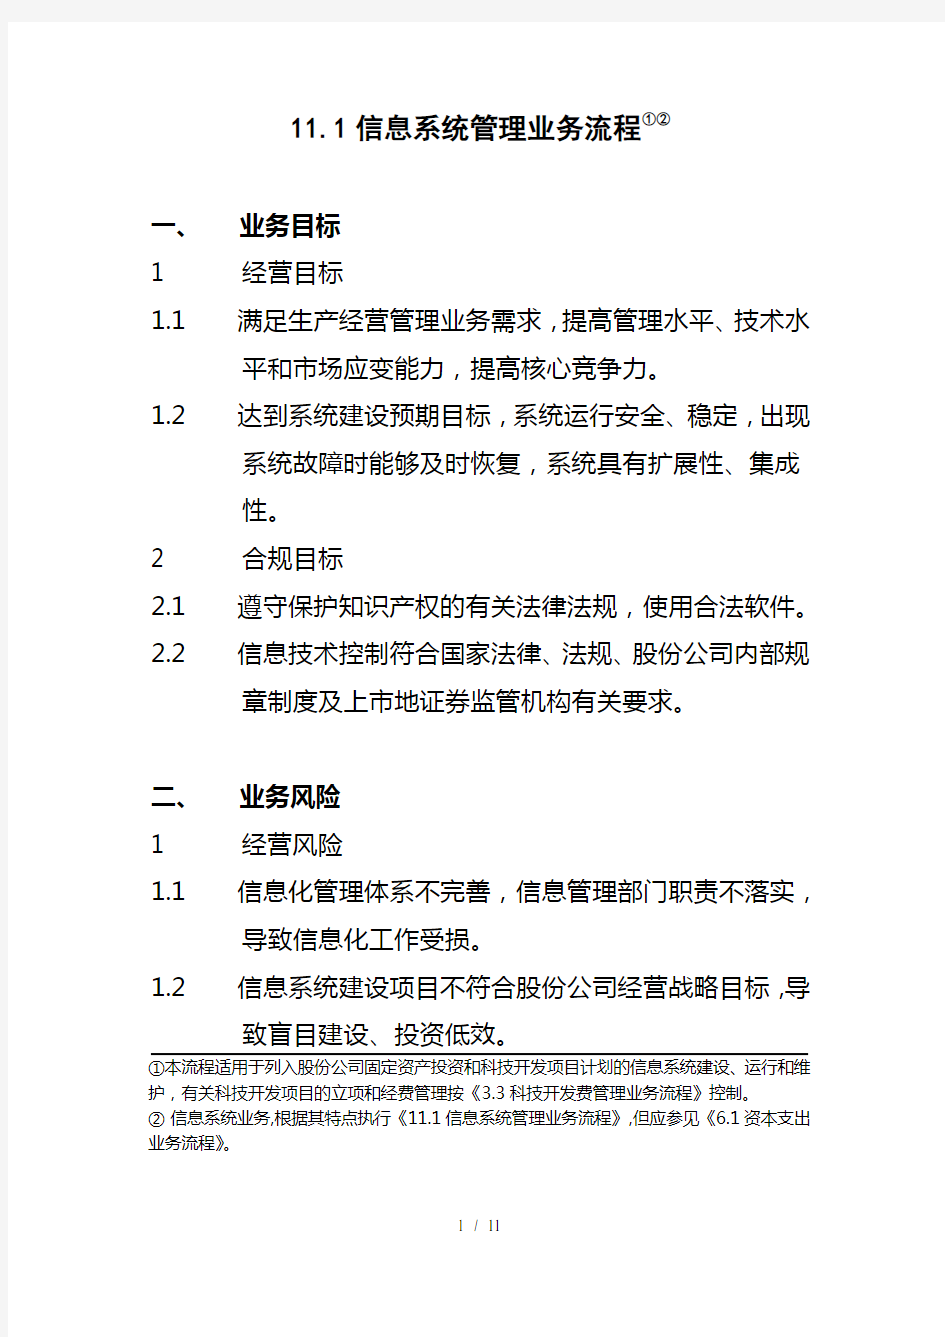 中国石化公司内部控制与业务流程汇总21